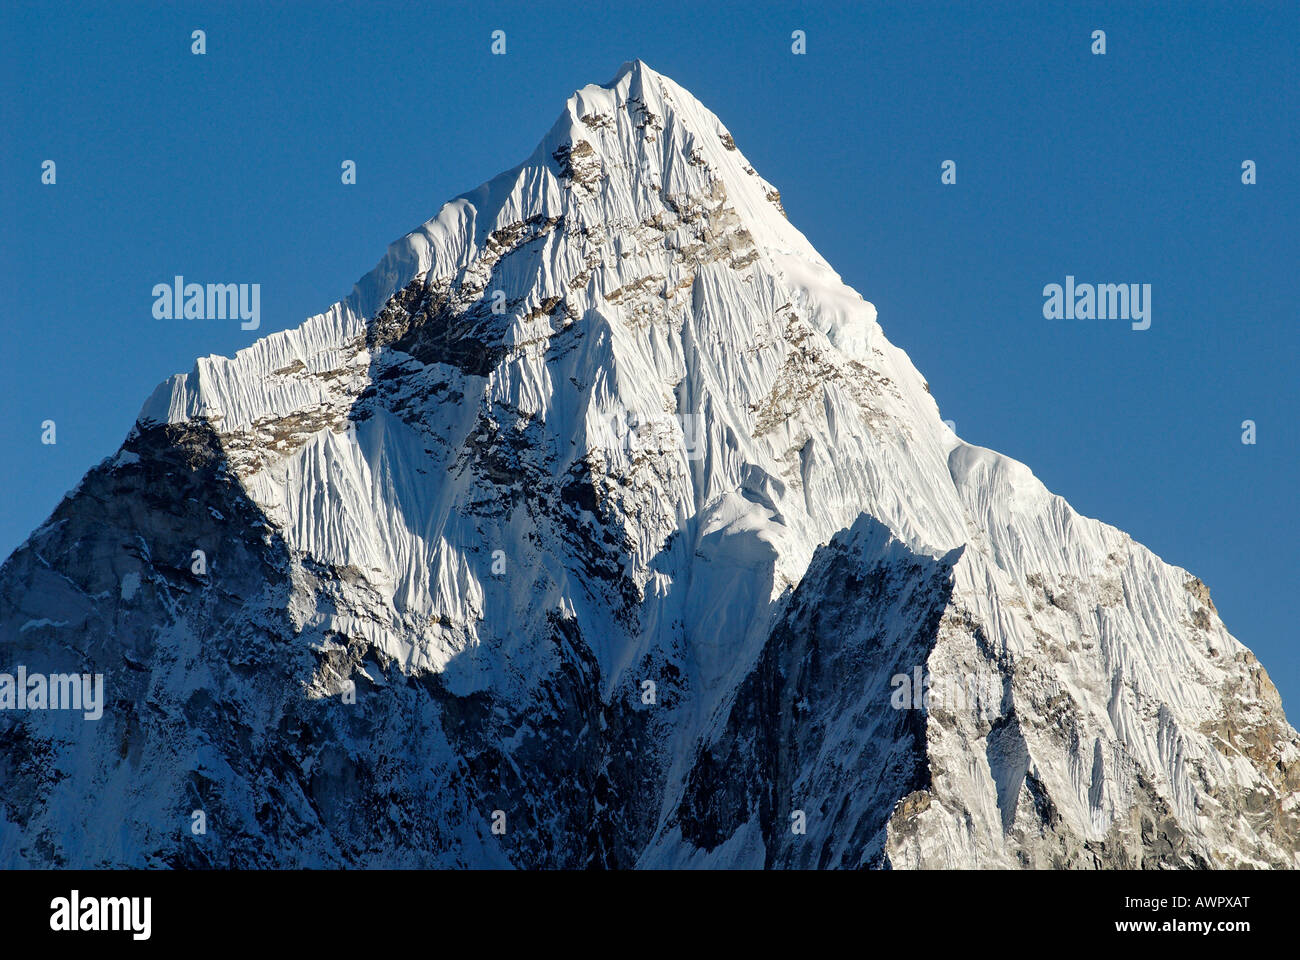 Ama Dablam Peak (6856), Khumbu Himal, Sagarmatha National Park, Nepal Stock Photo